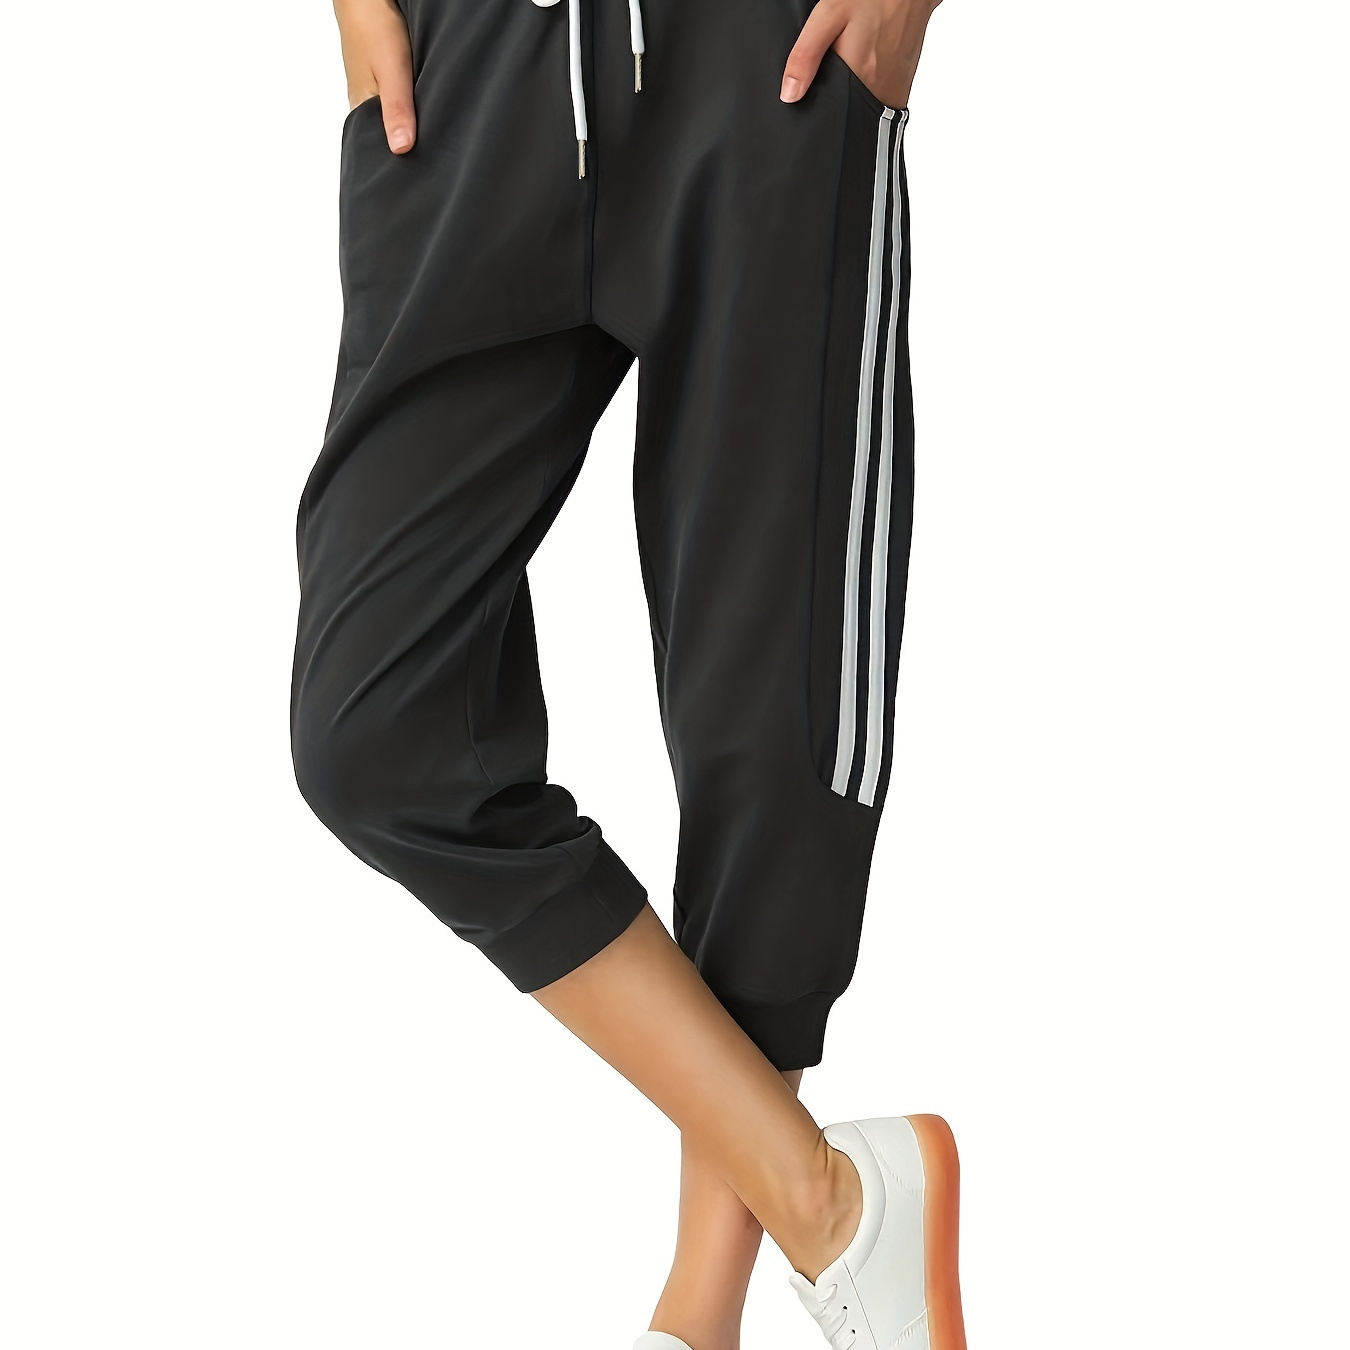 

Pantalon capri de sport pour femmes, idéal pour la course à pied, le yoga et le fitness, noir avec des rayures blanches, tenue active décontractée